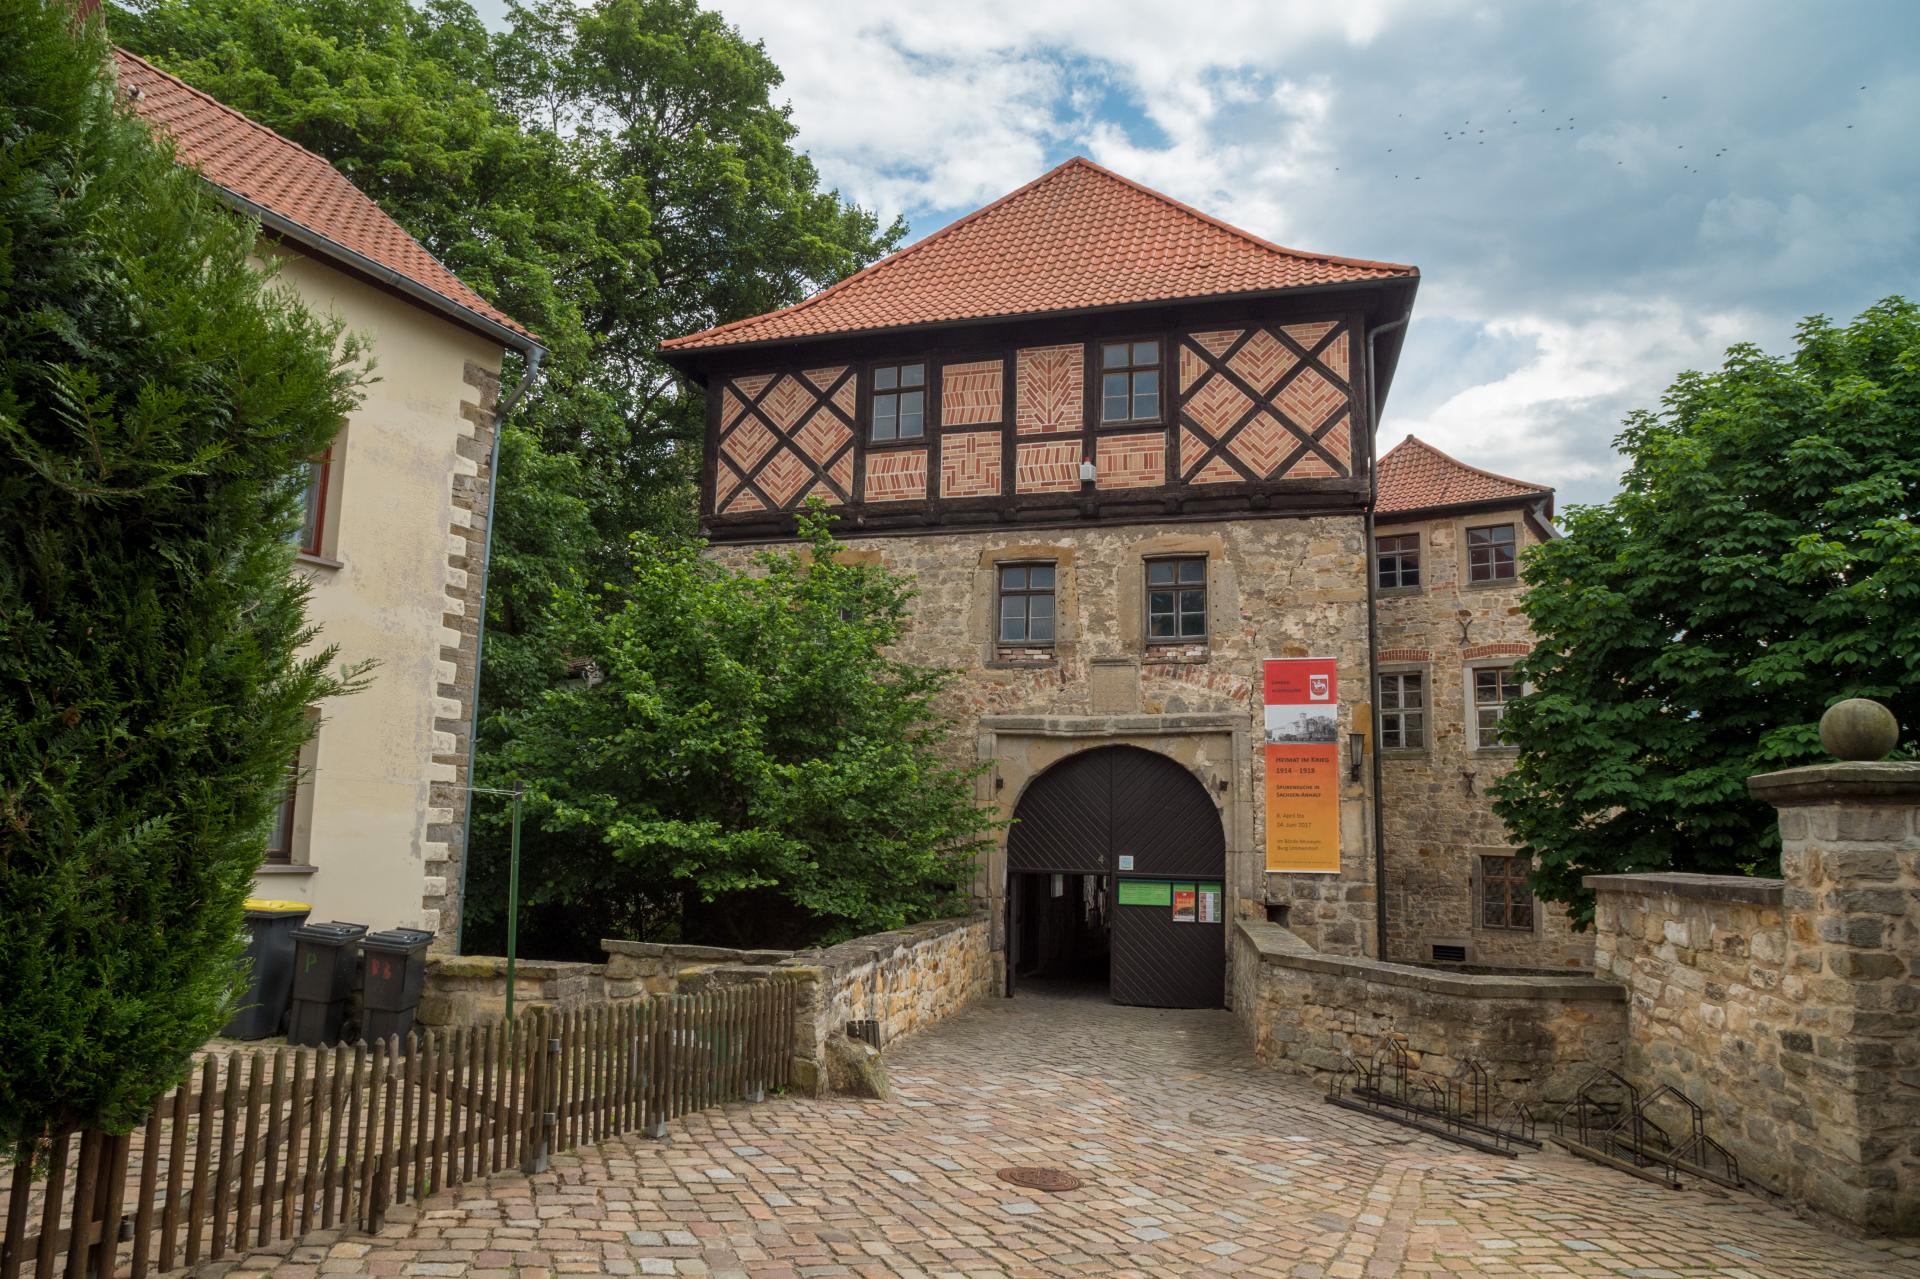 Eingang zum Burghof